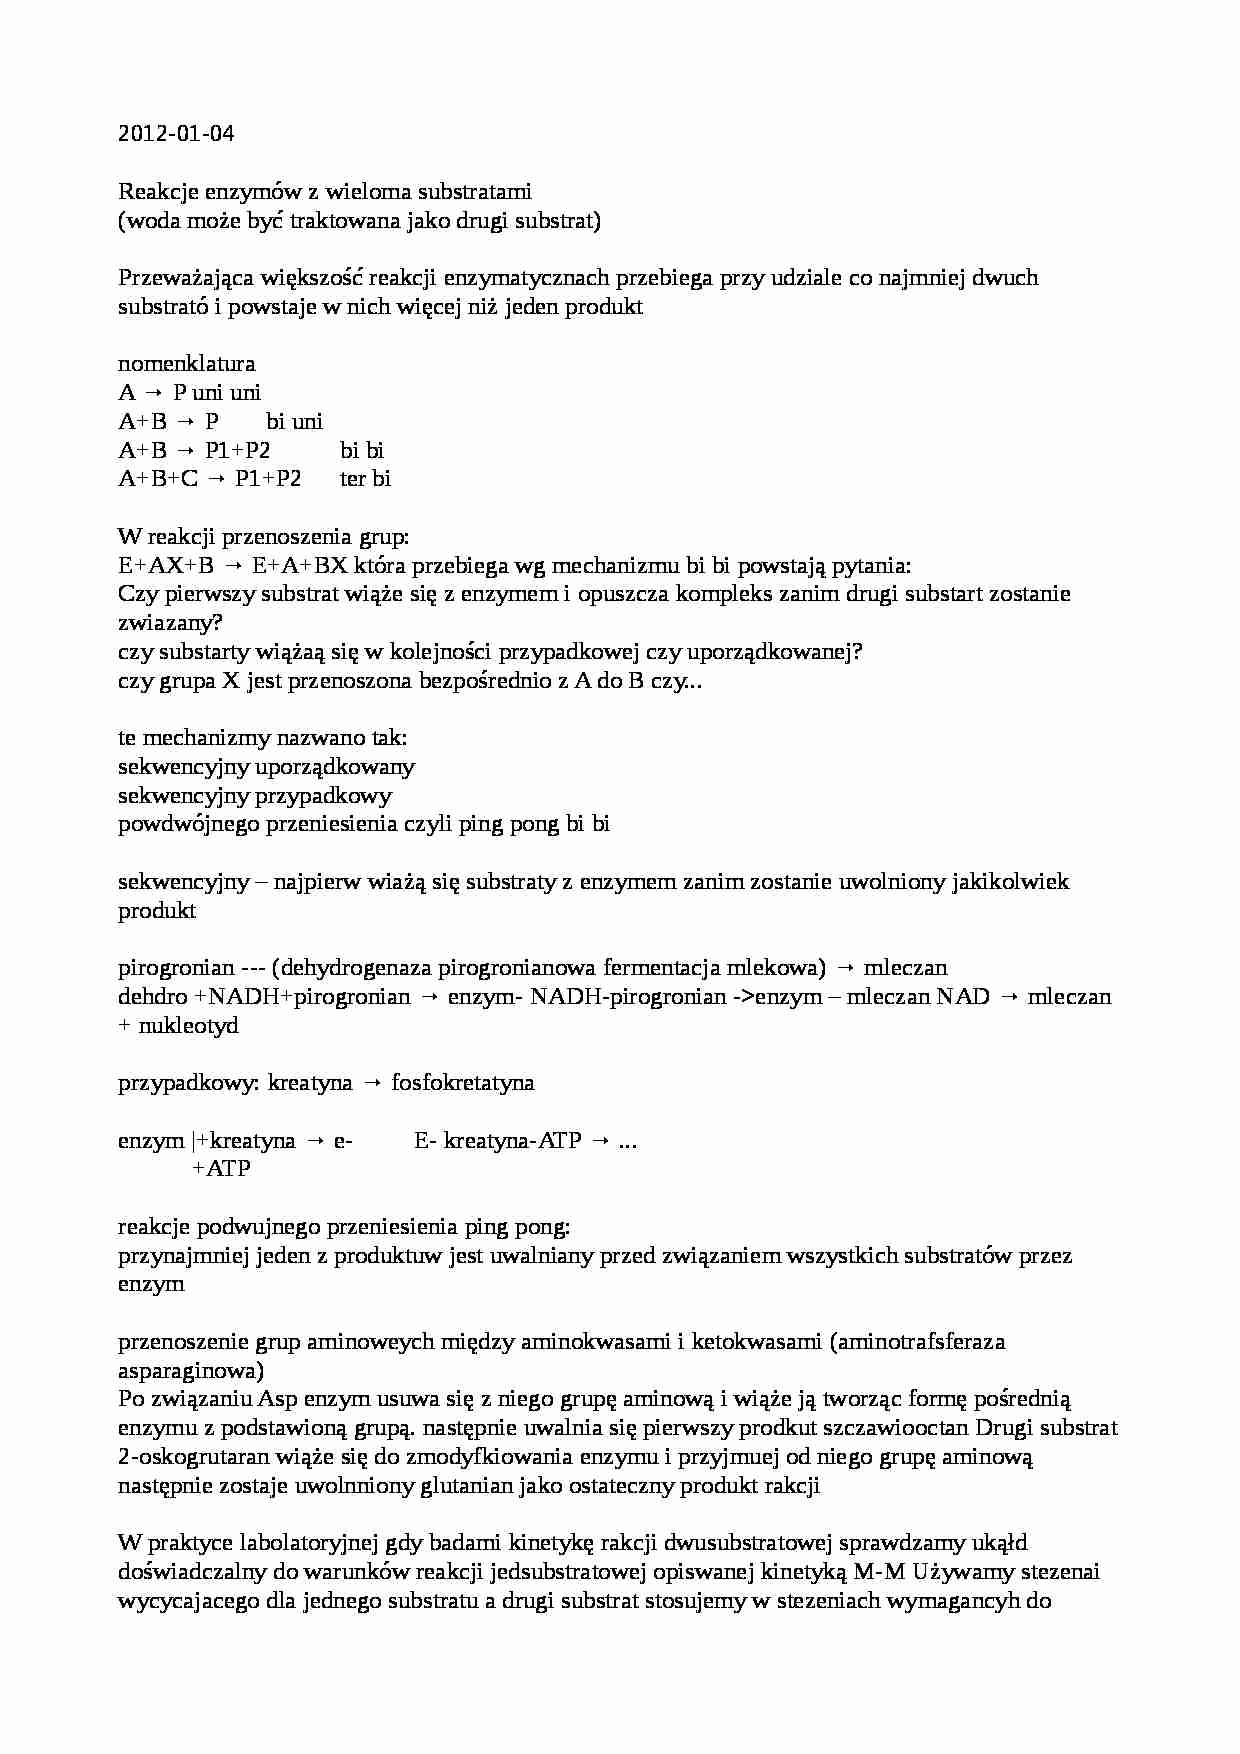 Enzymologia - notatki z wykładu 8 - strona 1